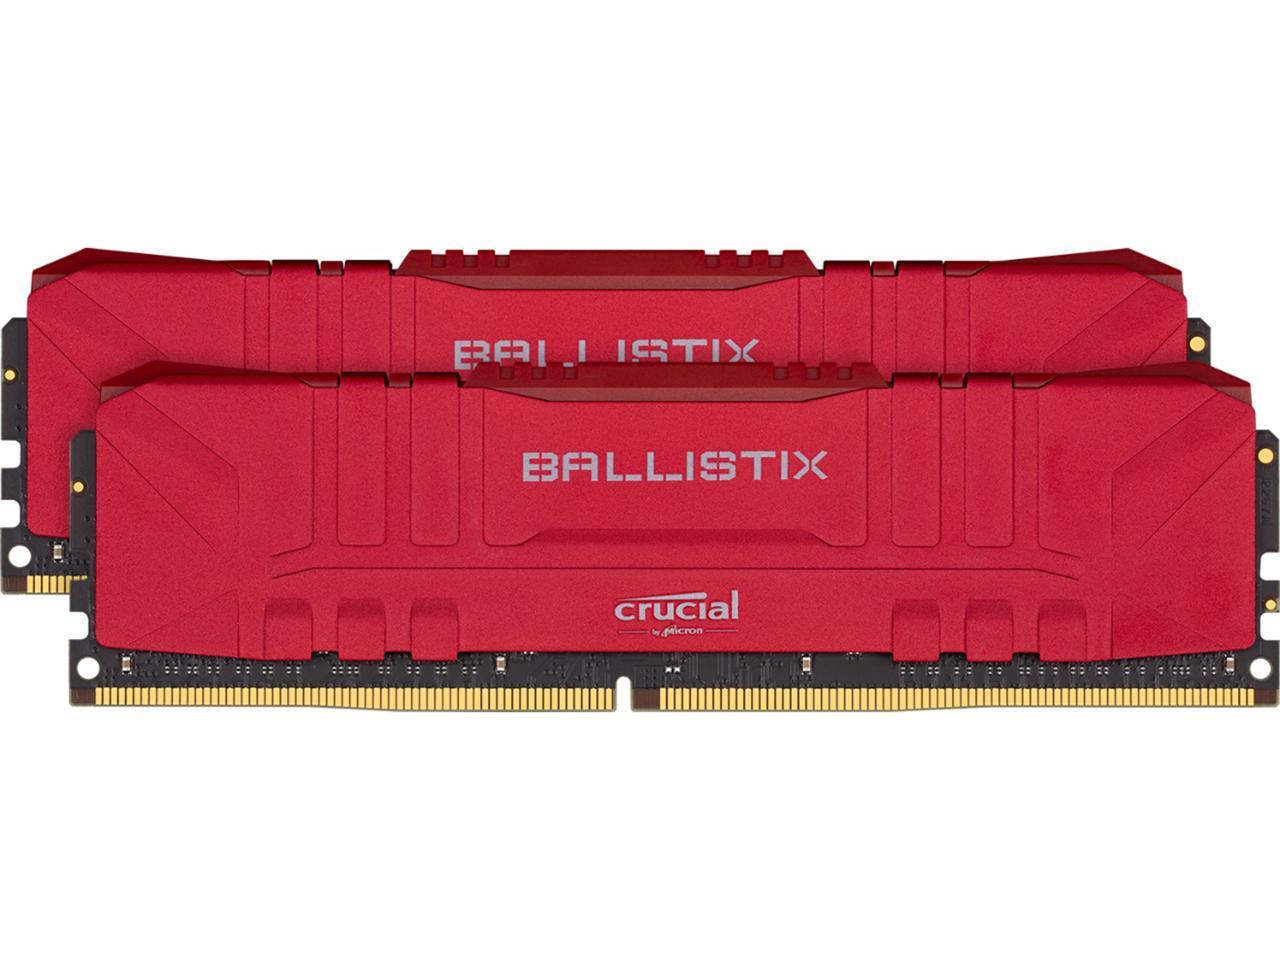 16GB (2x 8) Crucial Ballistix RGB DDR4 3600 CL16 Desktop RAM kit @Newegg $75 (32GB DDR4 3200/ $115AC)